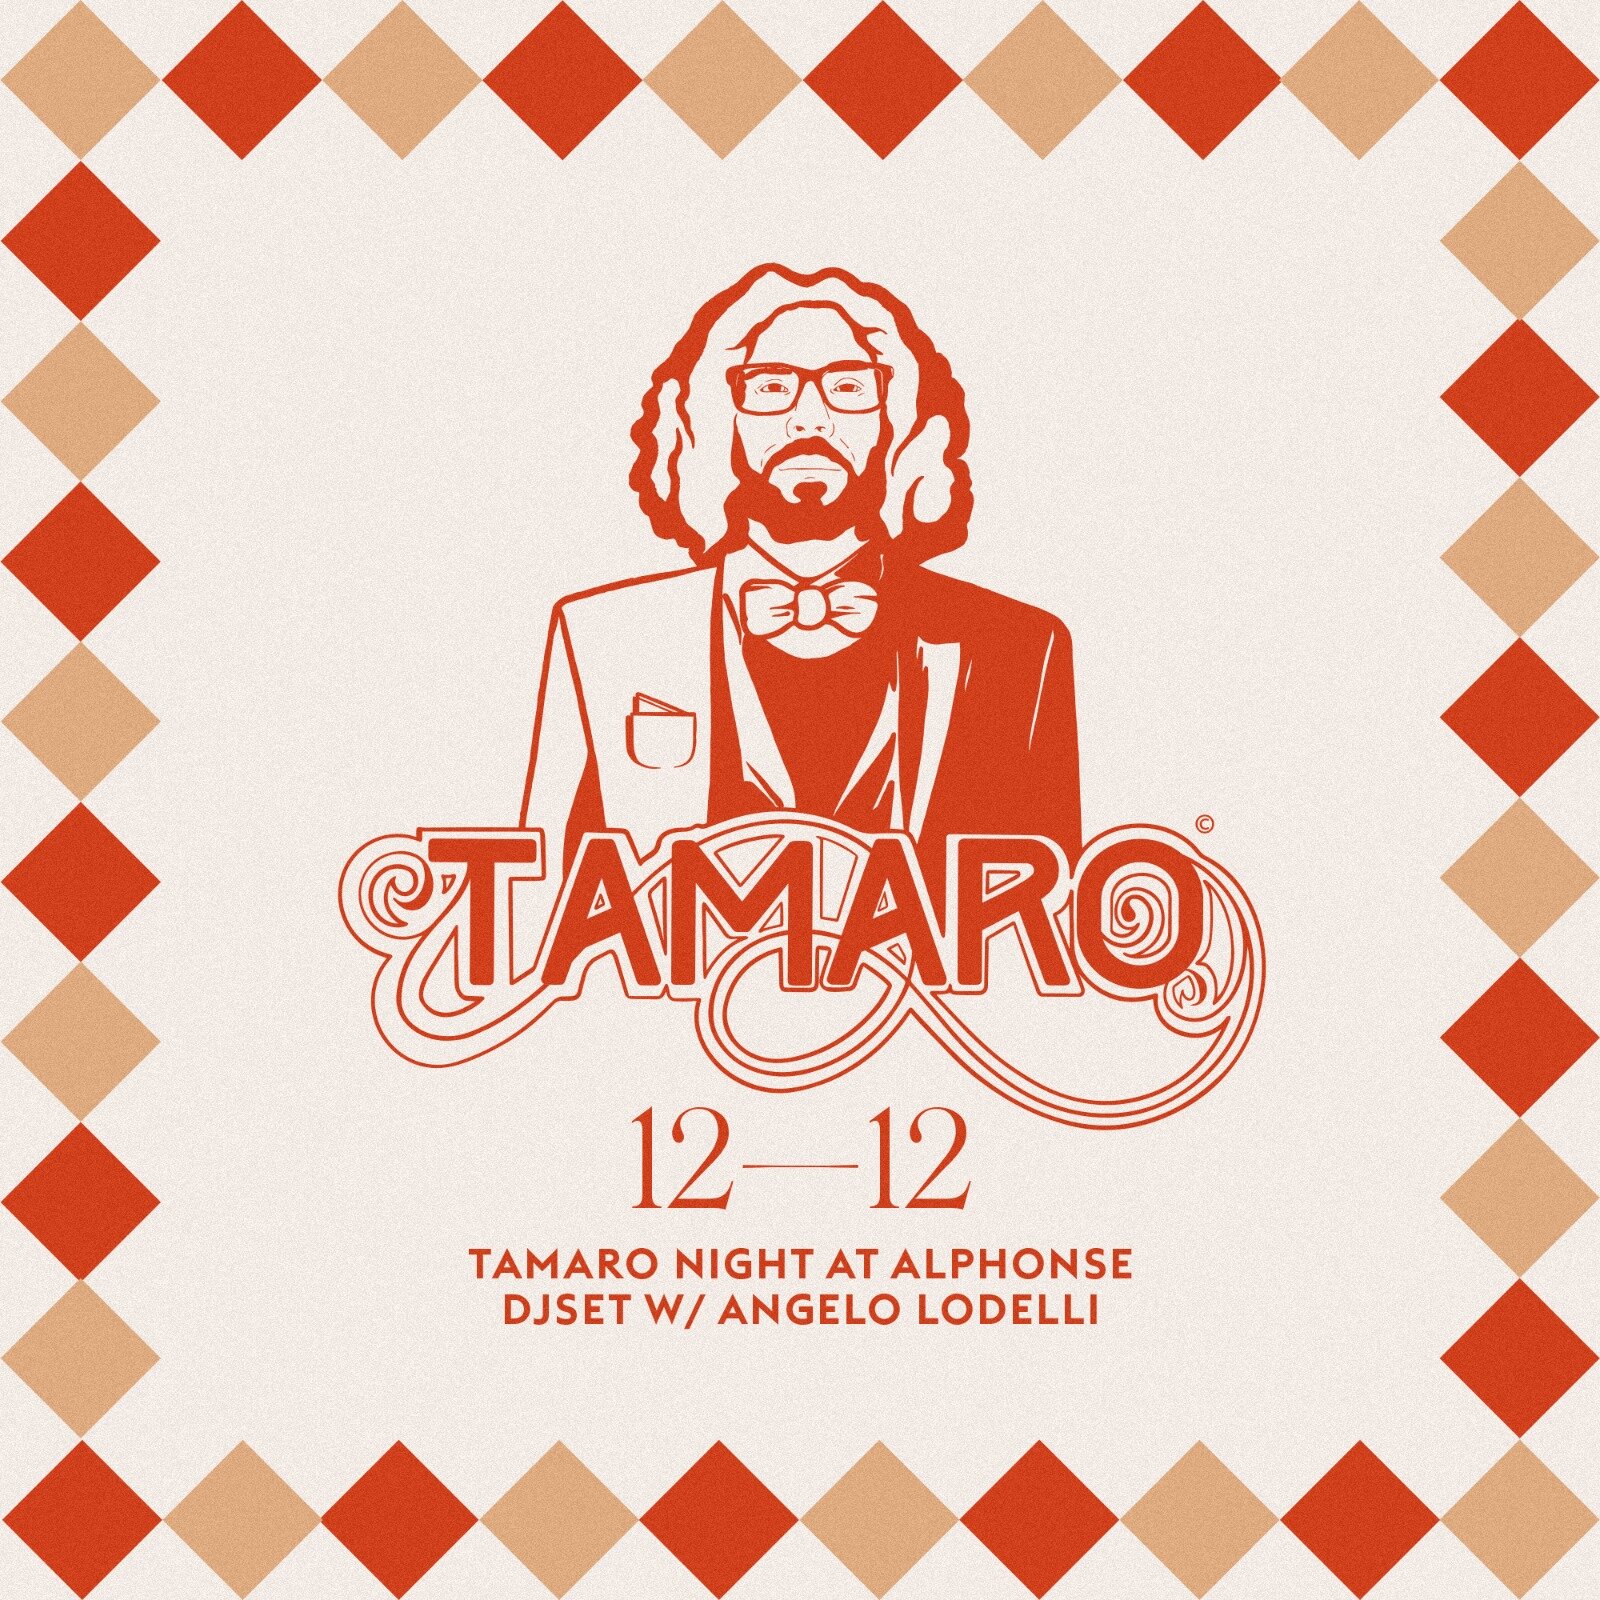 Marted&igrave; 12 Dicembre 2023 @Tamaro Night @alphonse_club 
- Vi aspettiamo a Livorno dalle 20:00 per festeggiare Tamaro e le sue prossime scoppiettanti novit&agrave;.

--&gt; https://fb.me/e/1hVuiumww

#amaro #tamaro #nuoviarrivi #shiningtamaro #d